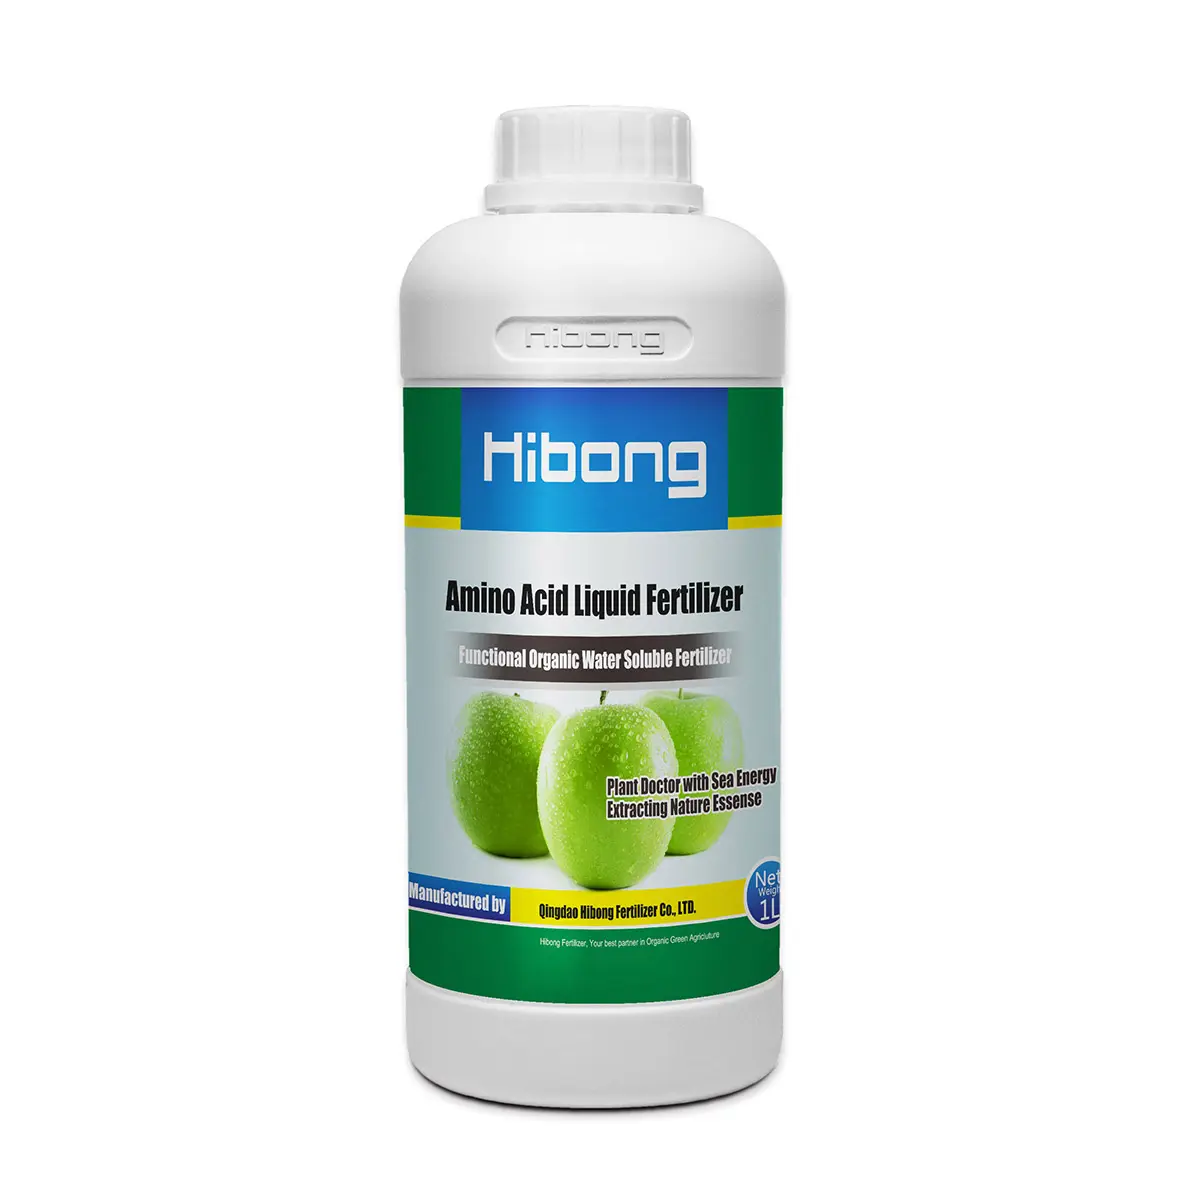 Hümik asit Amino asit bitki kaynaklı üreticinin Ton başına fiyatı ile organik sıvı gübre